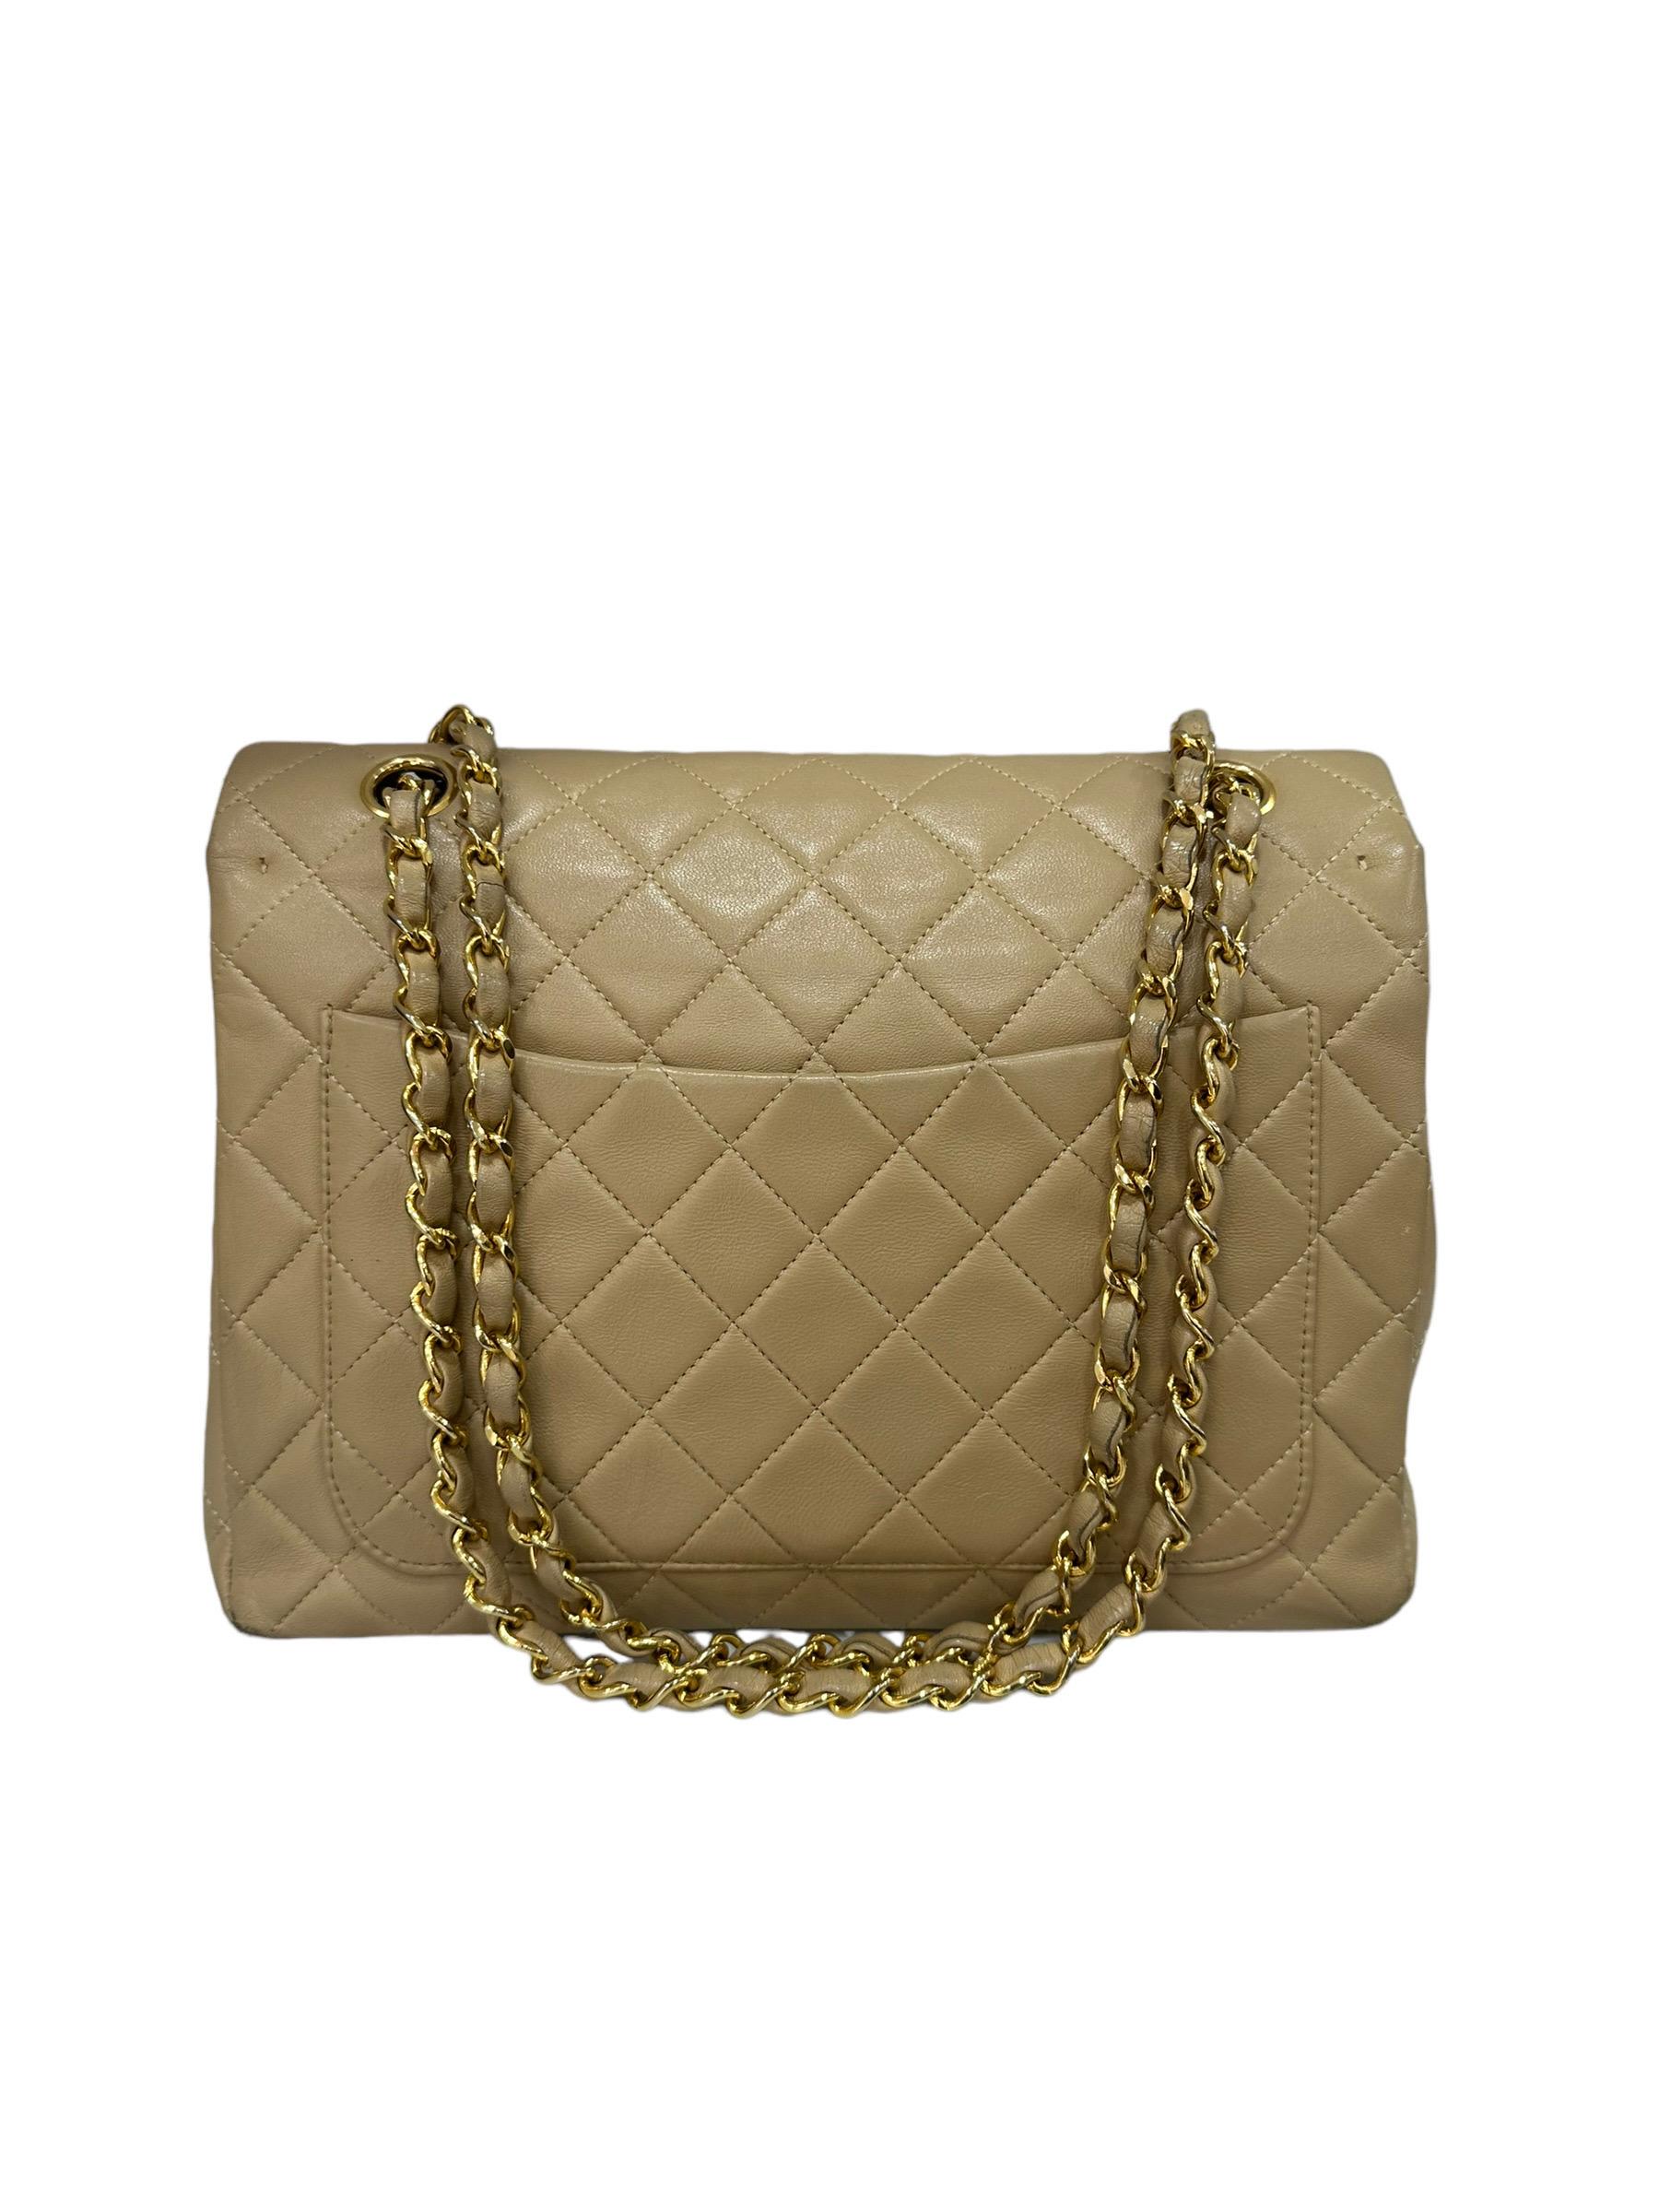 ‘90 Chanel Flap Vintage Beige Leather Shoulder Bag For Sale 2